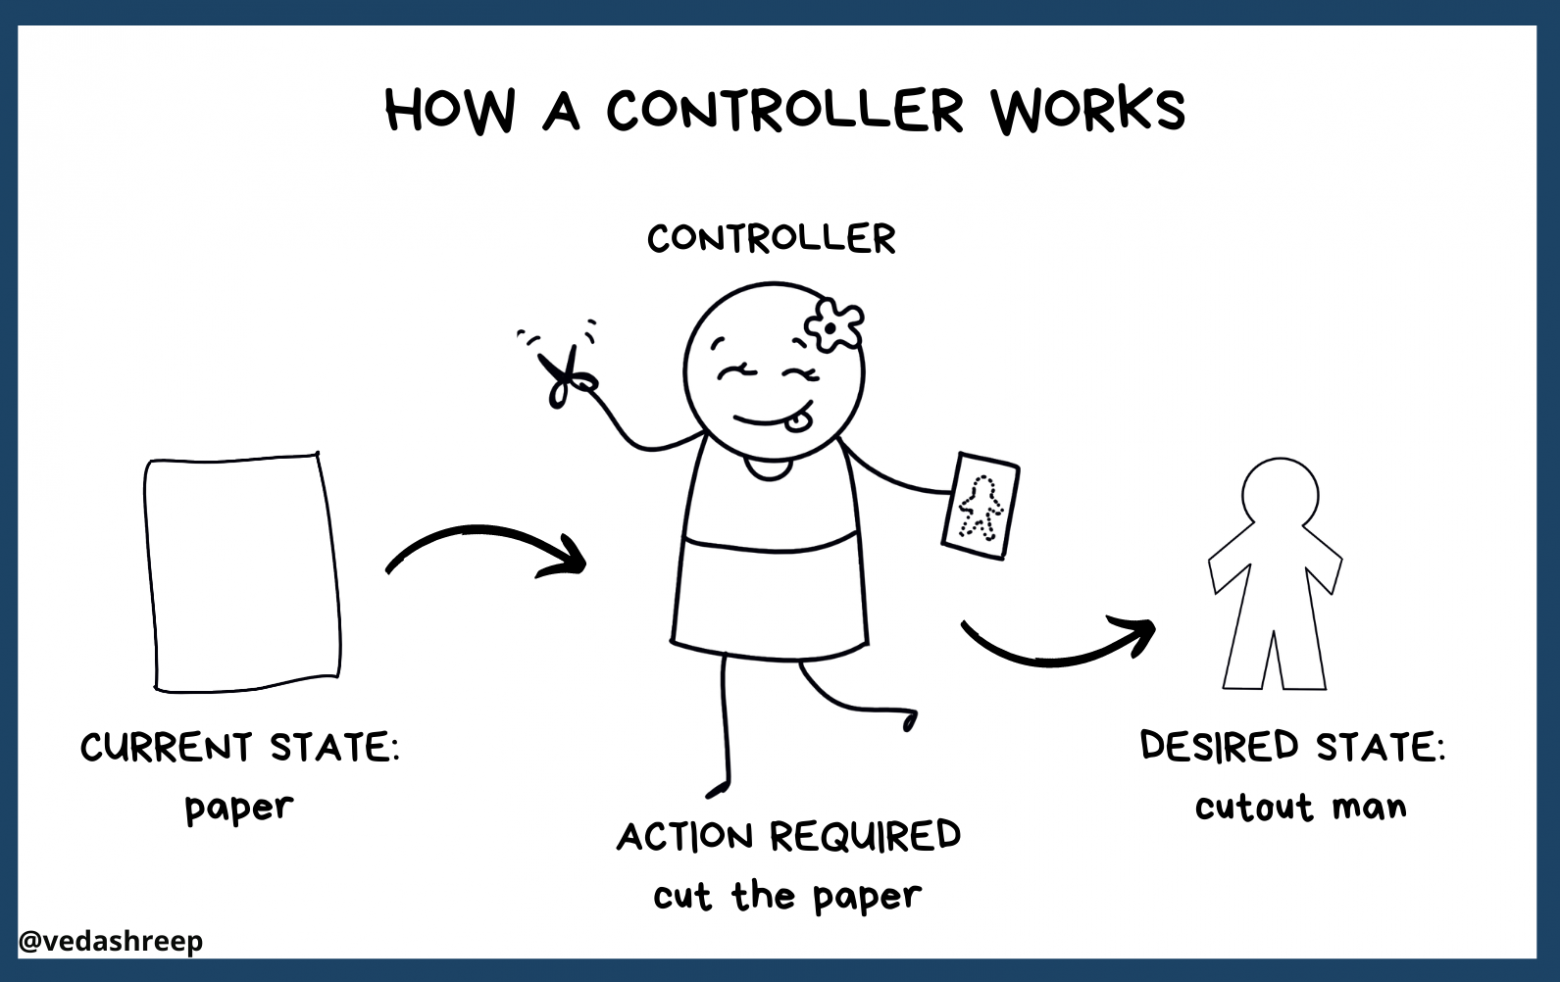 Как работает контроллер: текущее состояние (бумага) → требуемое действие (вырезать из бумаги) → желаемое состояние (человечек из бумаги).